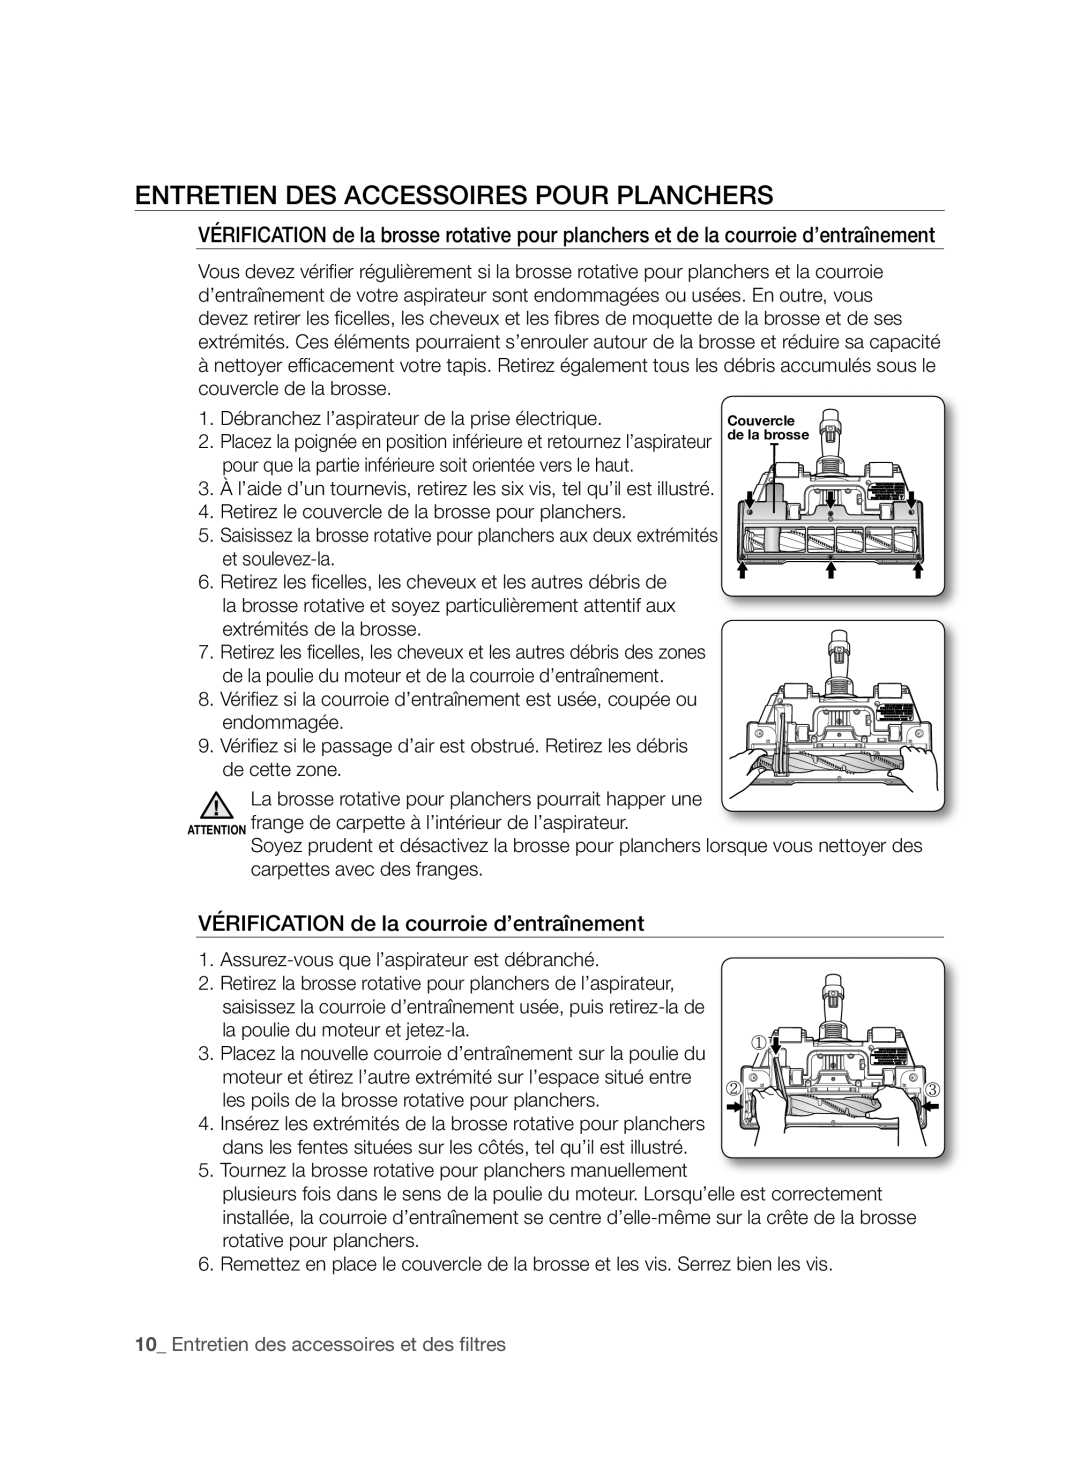 Samsung VCC96P0H1G user manual Entretien Des Accessoires Pour Planchers, VÉRIFICATION de la courroie d’entraînement 